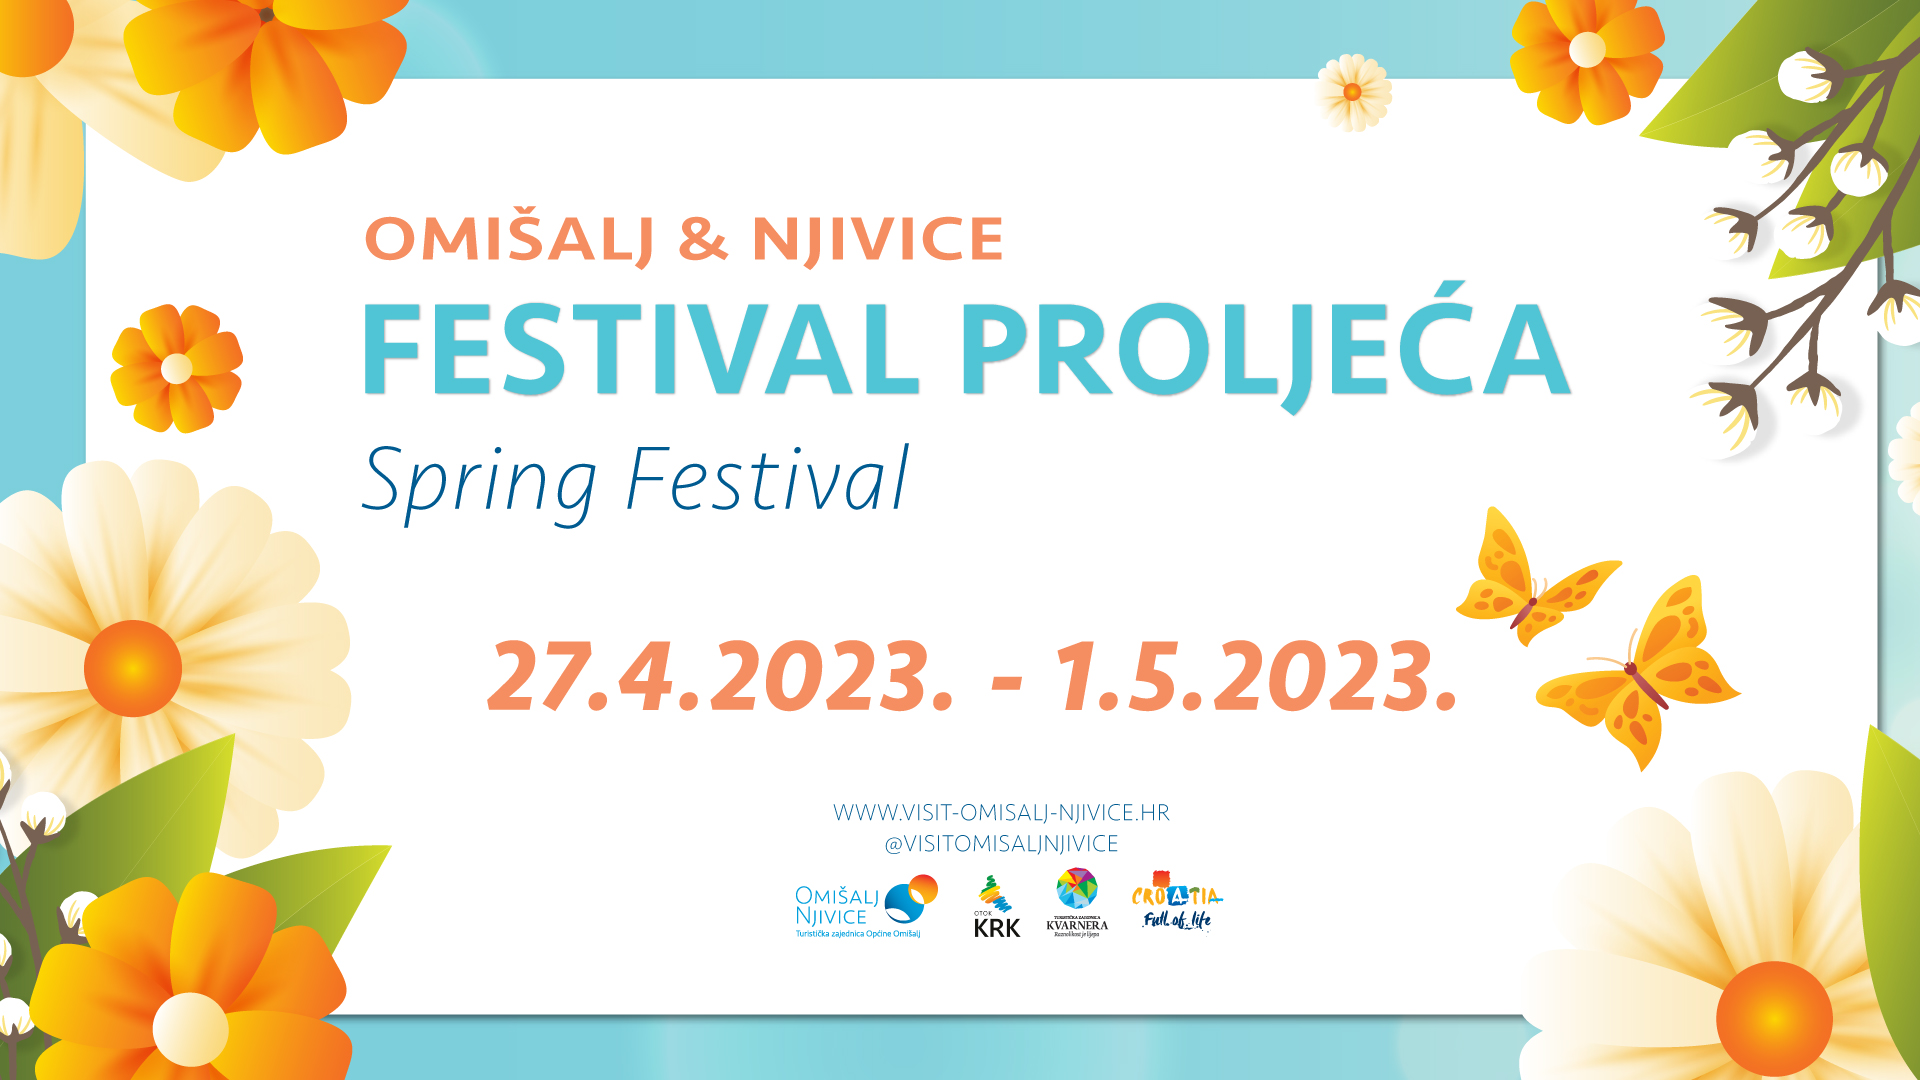 Festival proljeća u Omišlju i Njivicama: bili smo na Art&Wine radionici by Mirna Sišul!